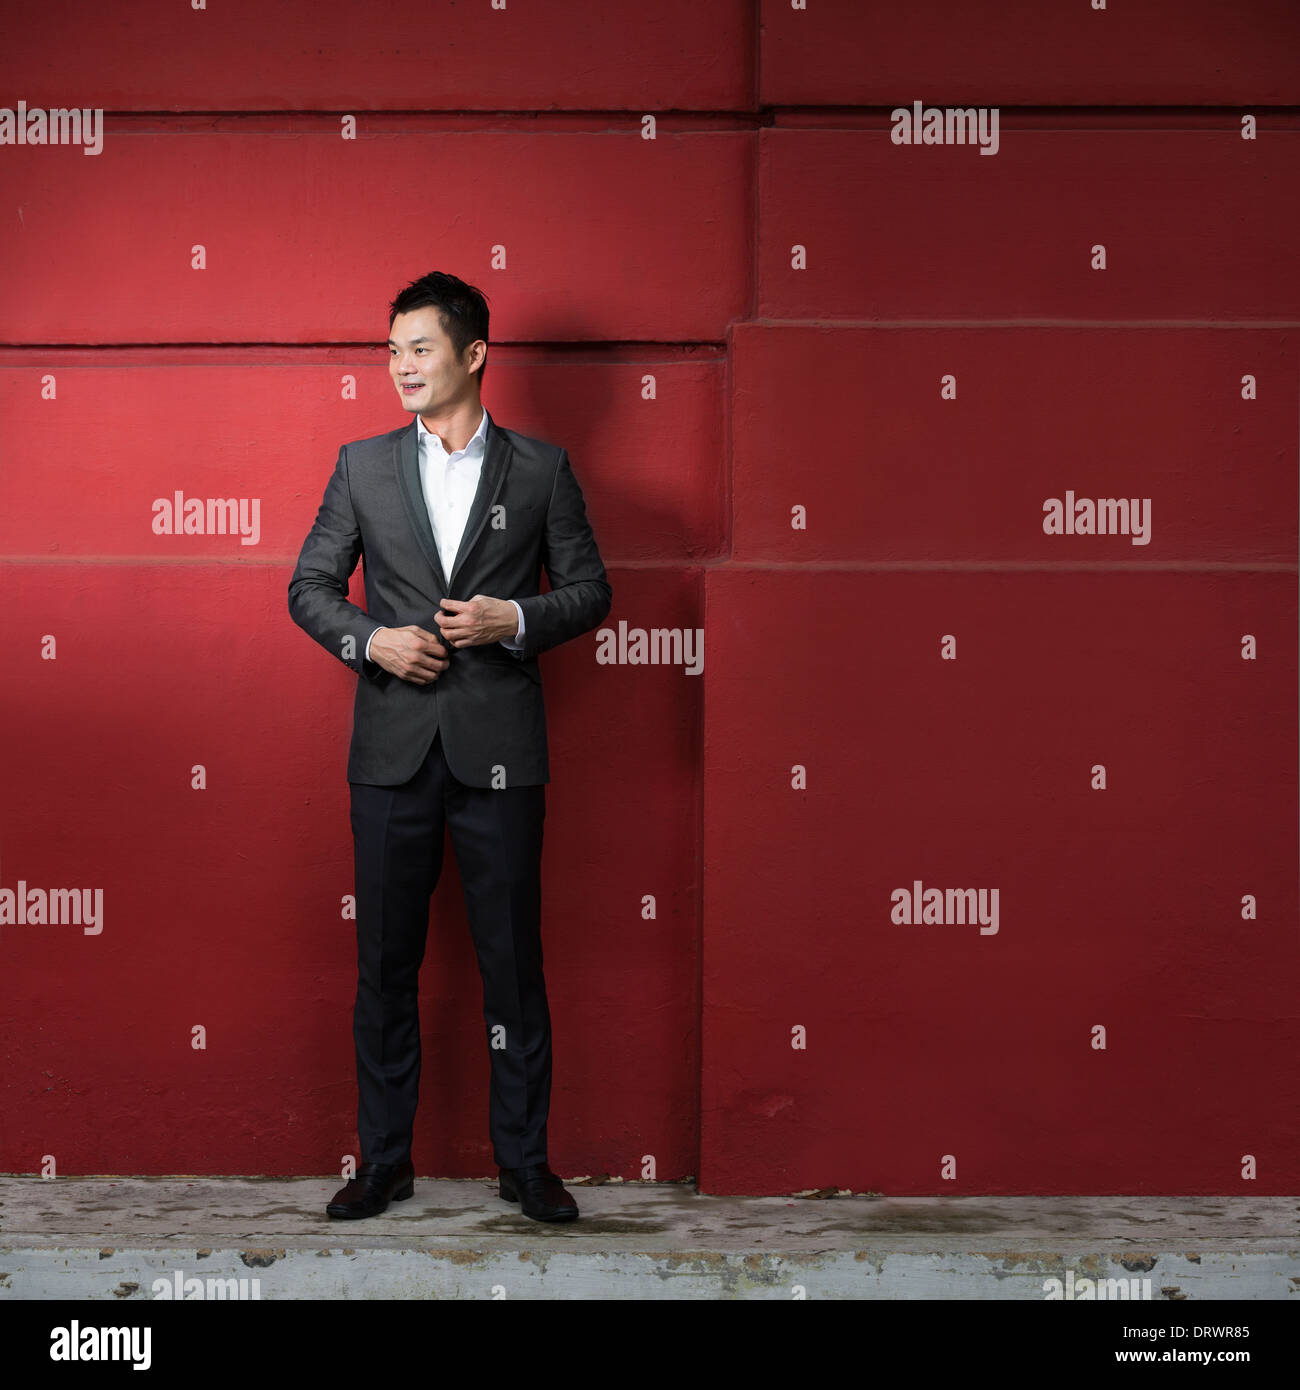 Apuesto joven hombre de negocios chino apoyado contra una pared roja. Feliz el hombre de negocios asiáticos sonriendo y mirando a otro lado. Foto de stock